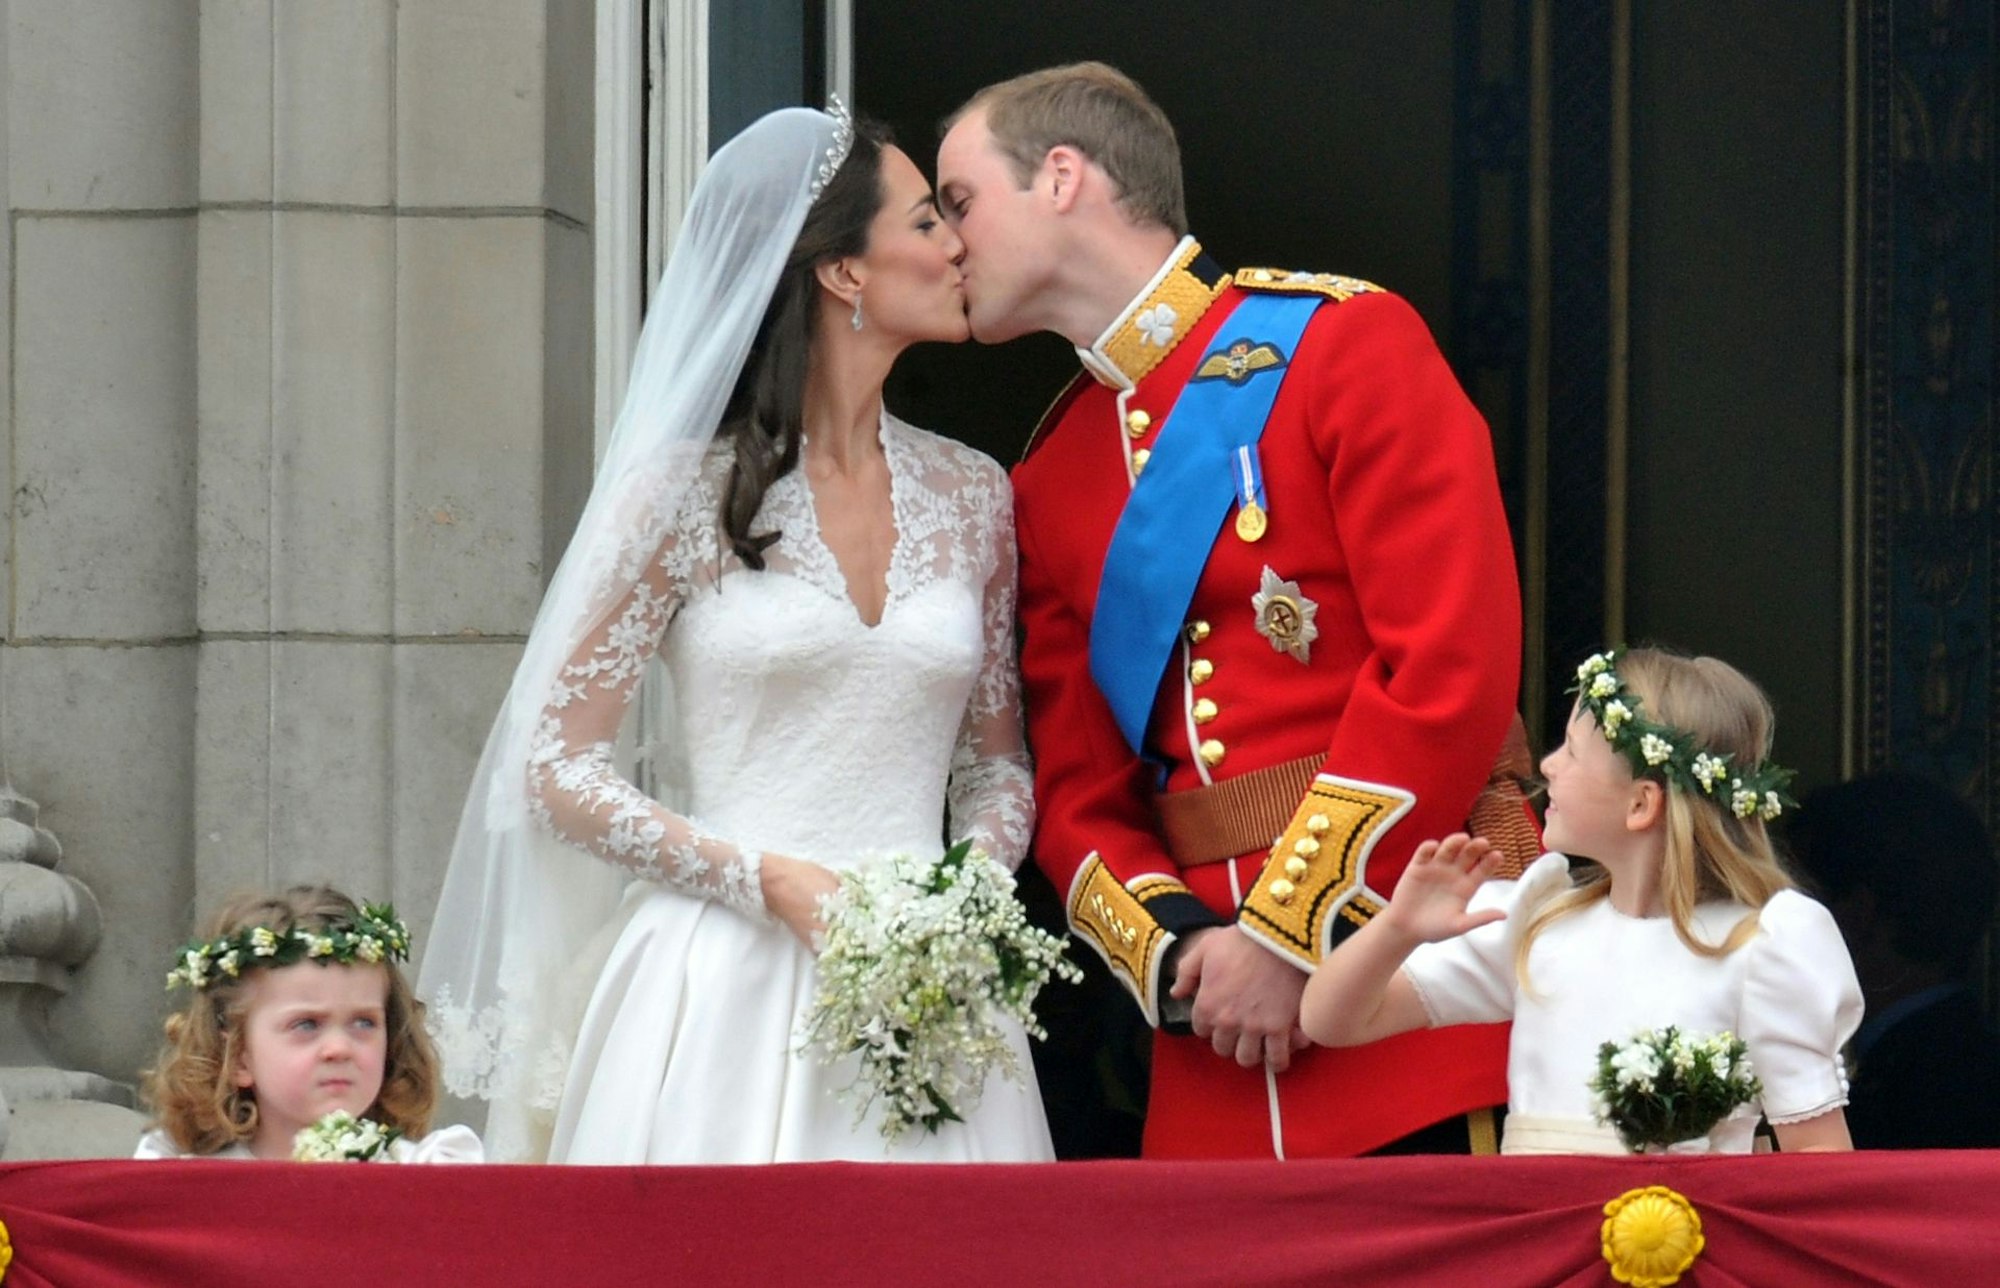 Mit der Hochzeit am 29. April 2011 wurde aus der bürgerlichen Kate Middleton nach der Hochzeit mit Prinz William Herzogin Catherine. Inzwischen ist sie die Prinzessin von Wales.